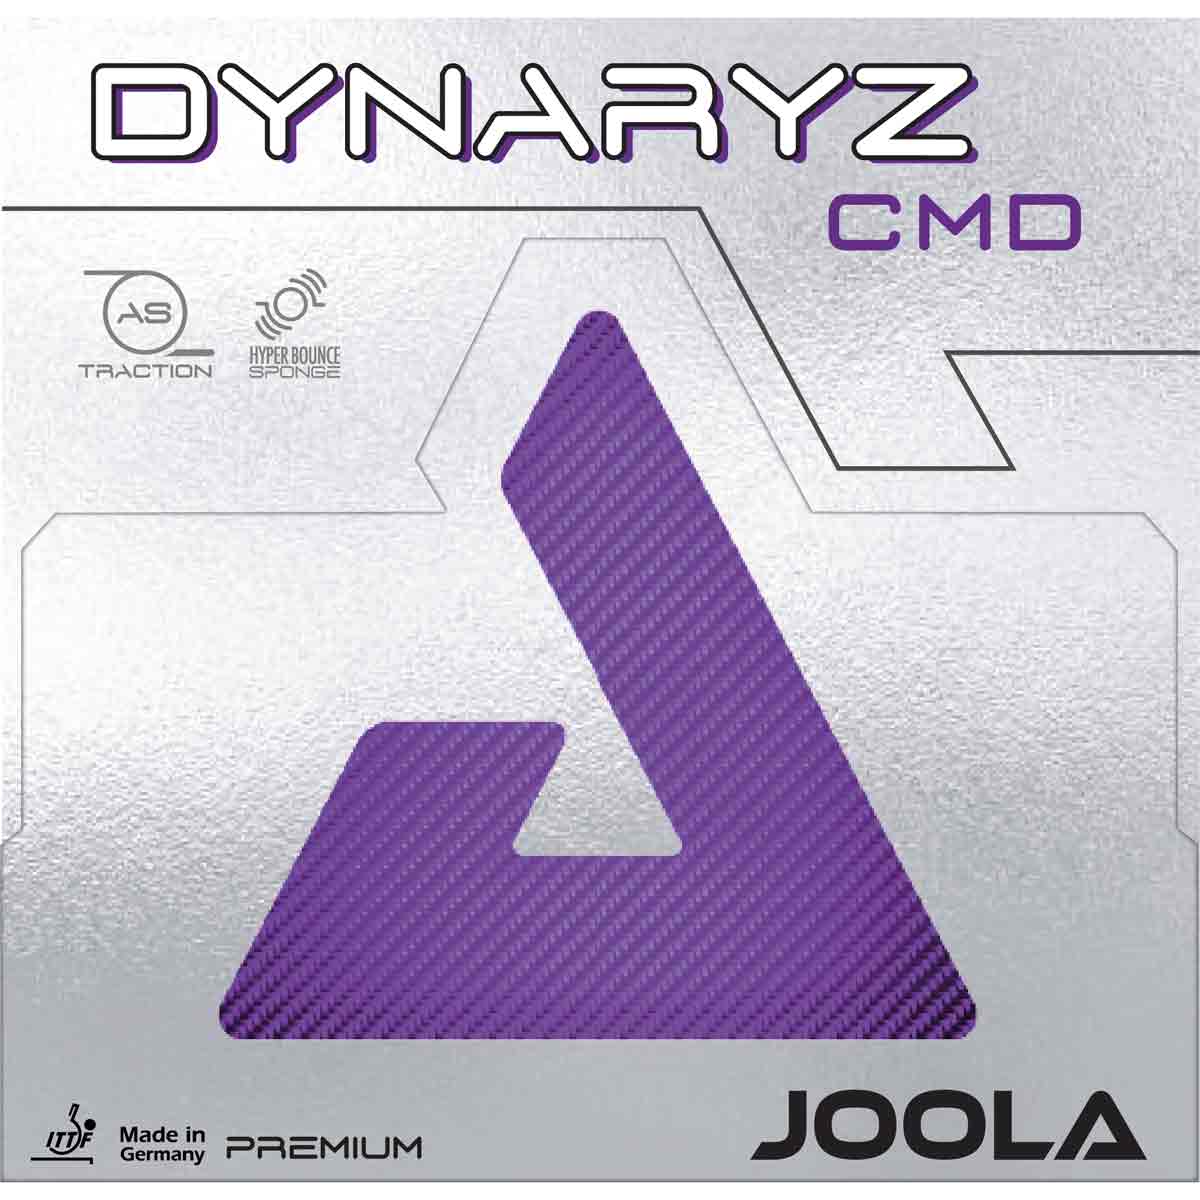 Joola Belag Dynaryz CMD lila 2,3 mm